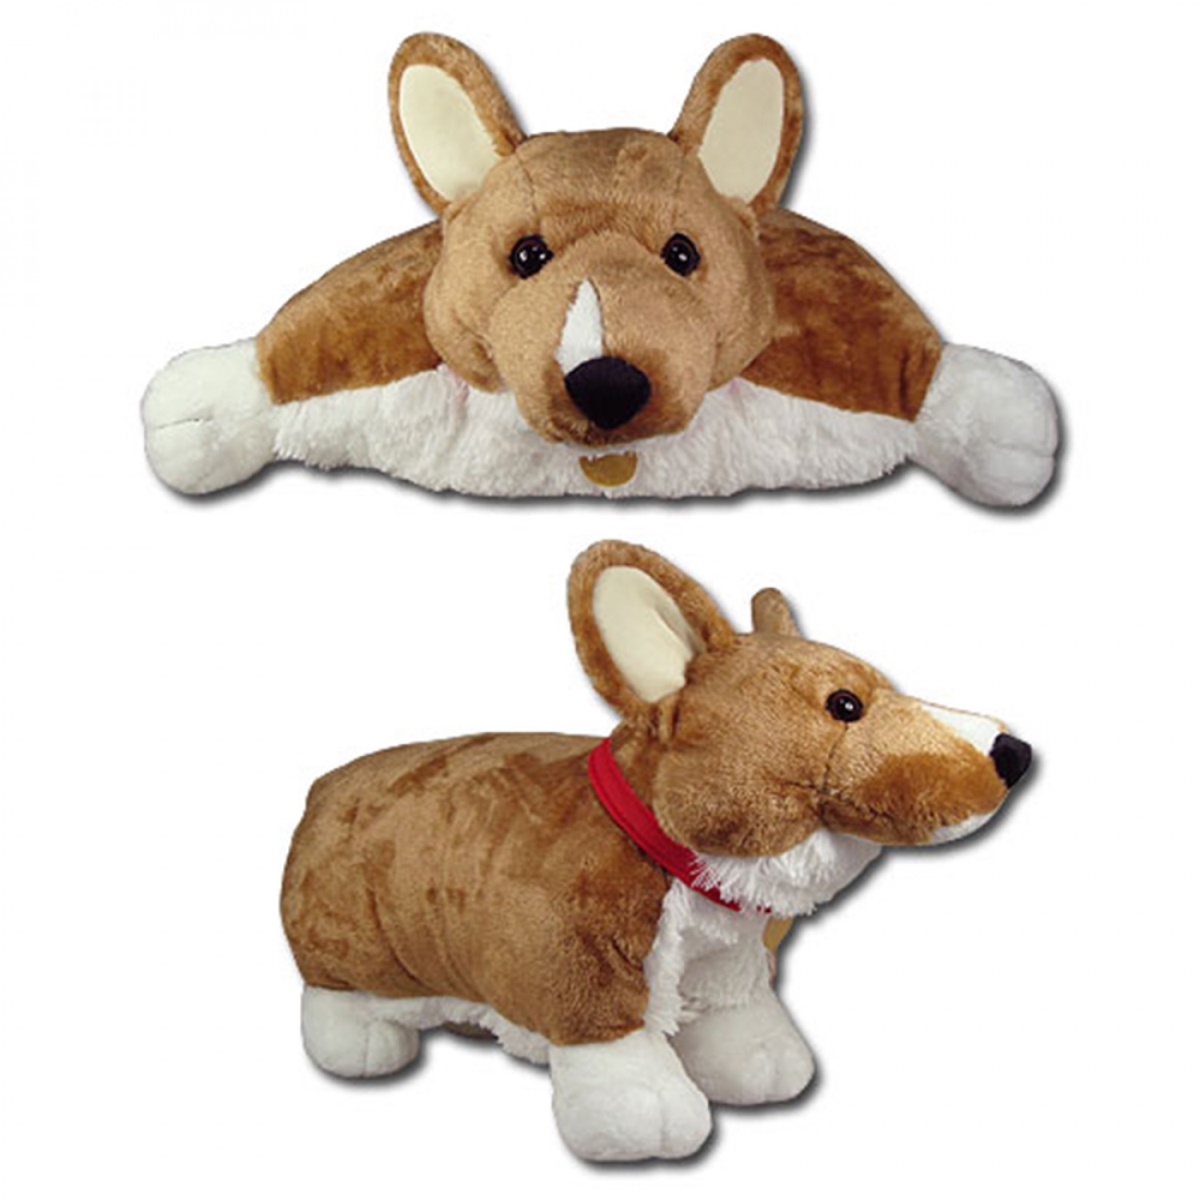 Picture of Cowboy Bebop 846598 Cowboy Bebop Ein Data Dog Transforming Pillow Plush Toy